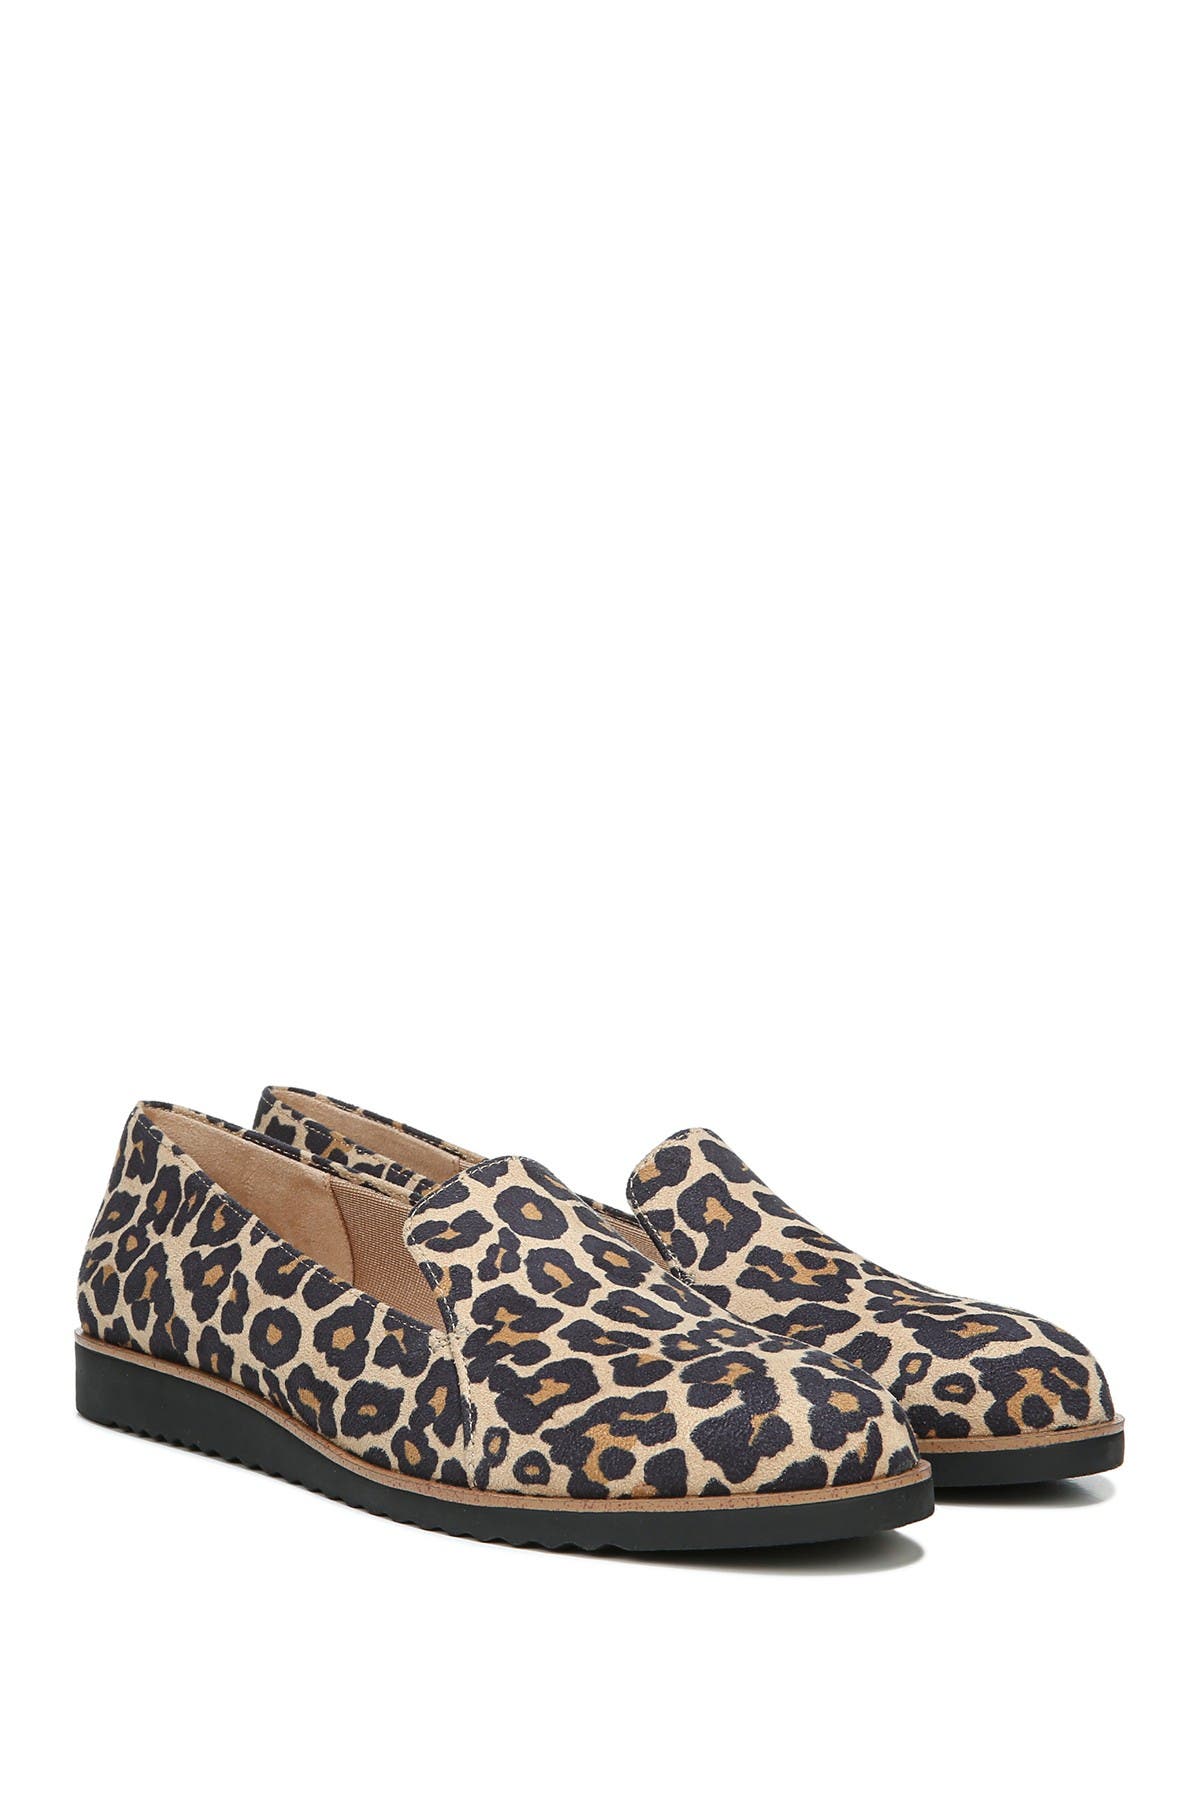 wide width leopard loafers